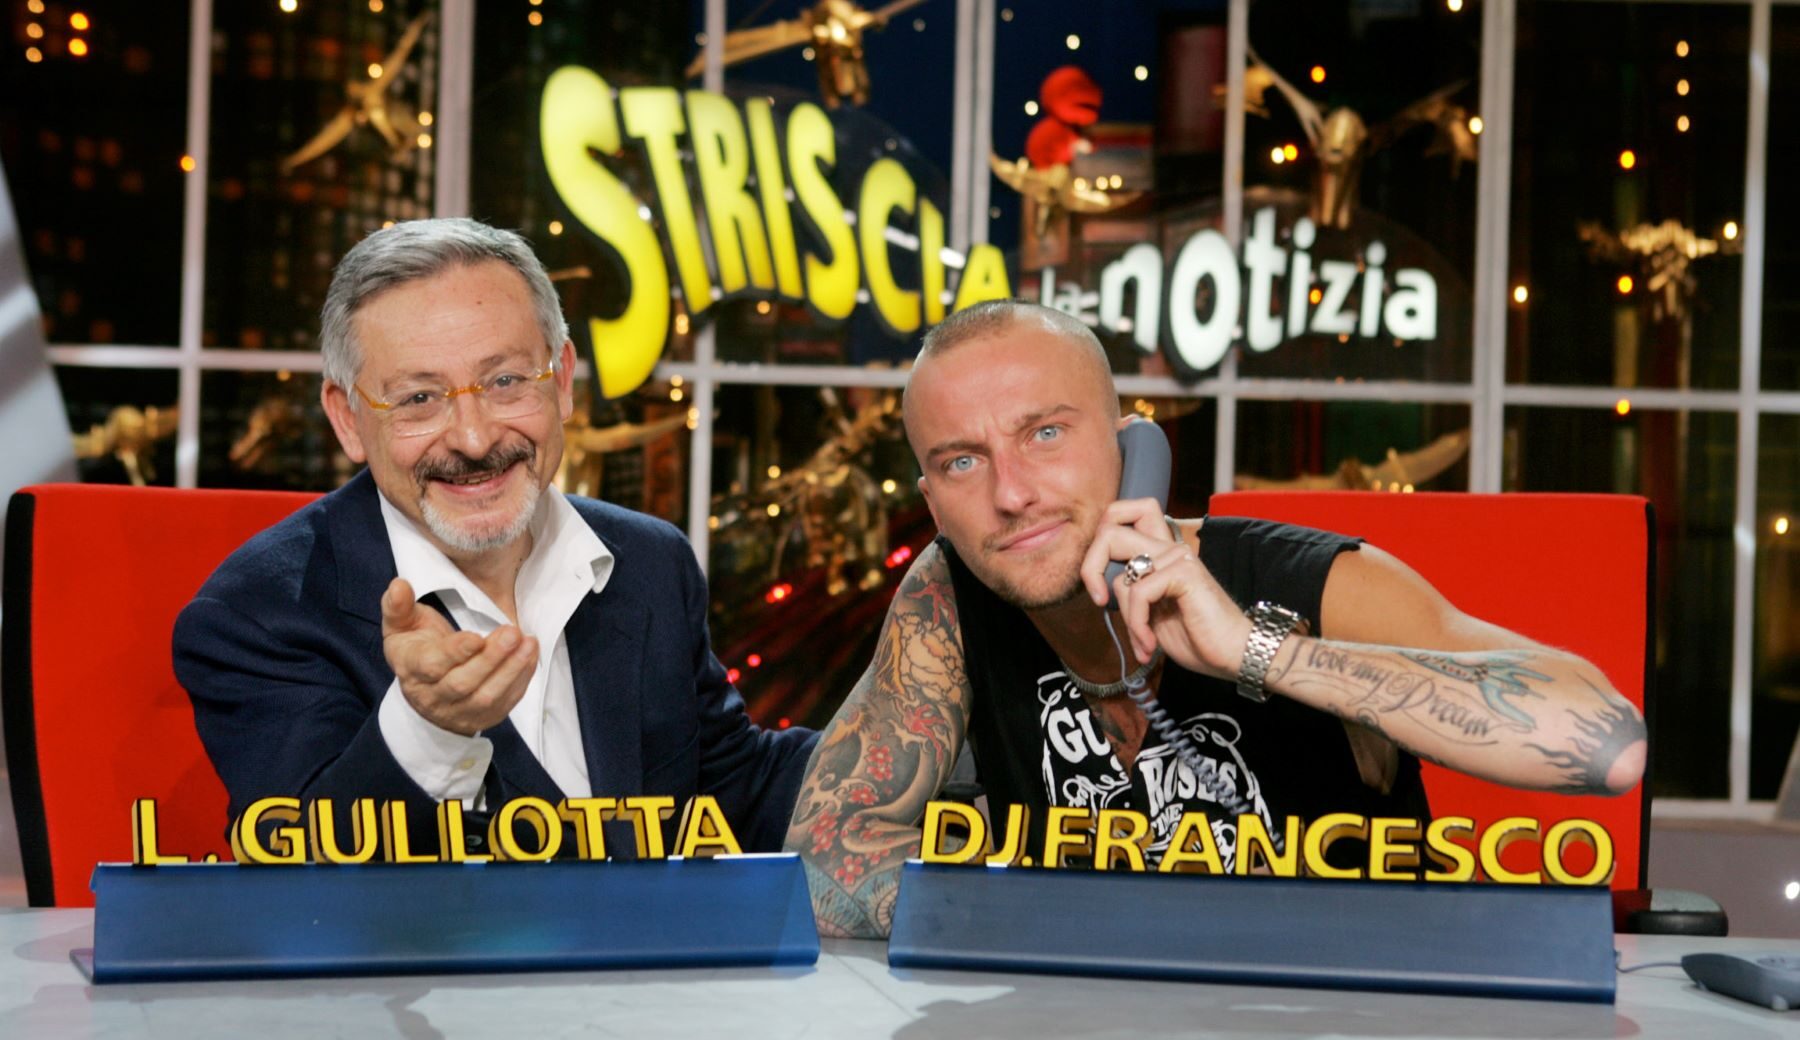 Leo Gullotta e Dj Francesco